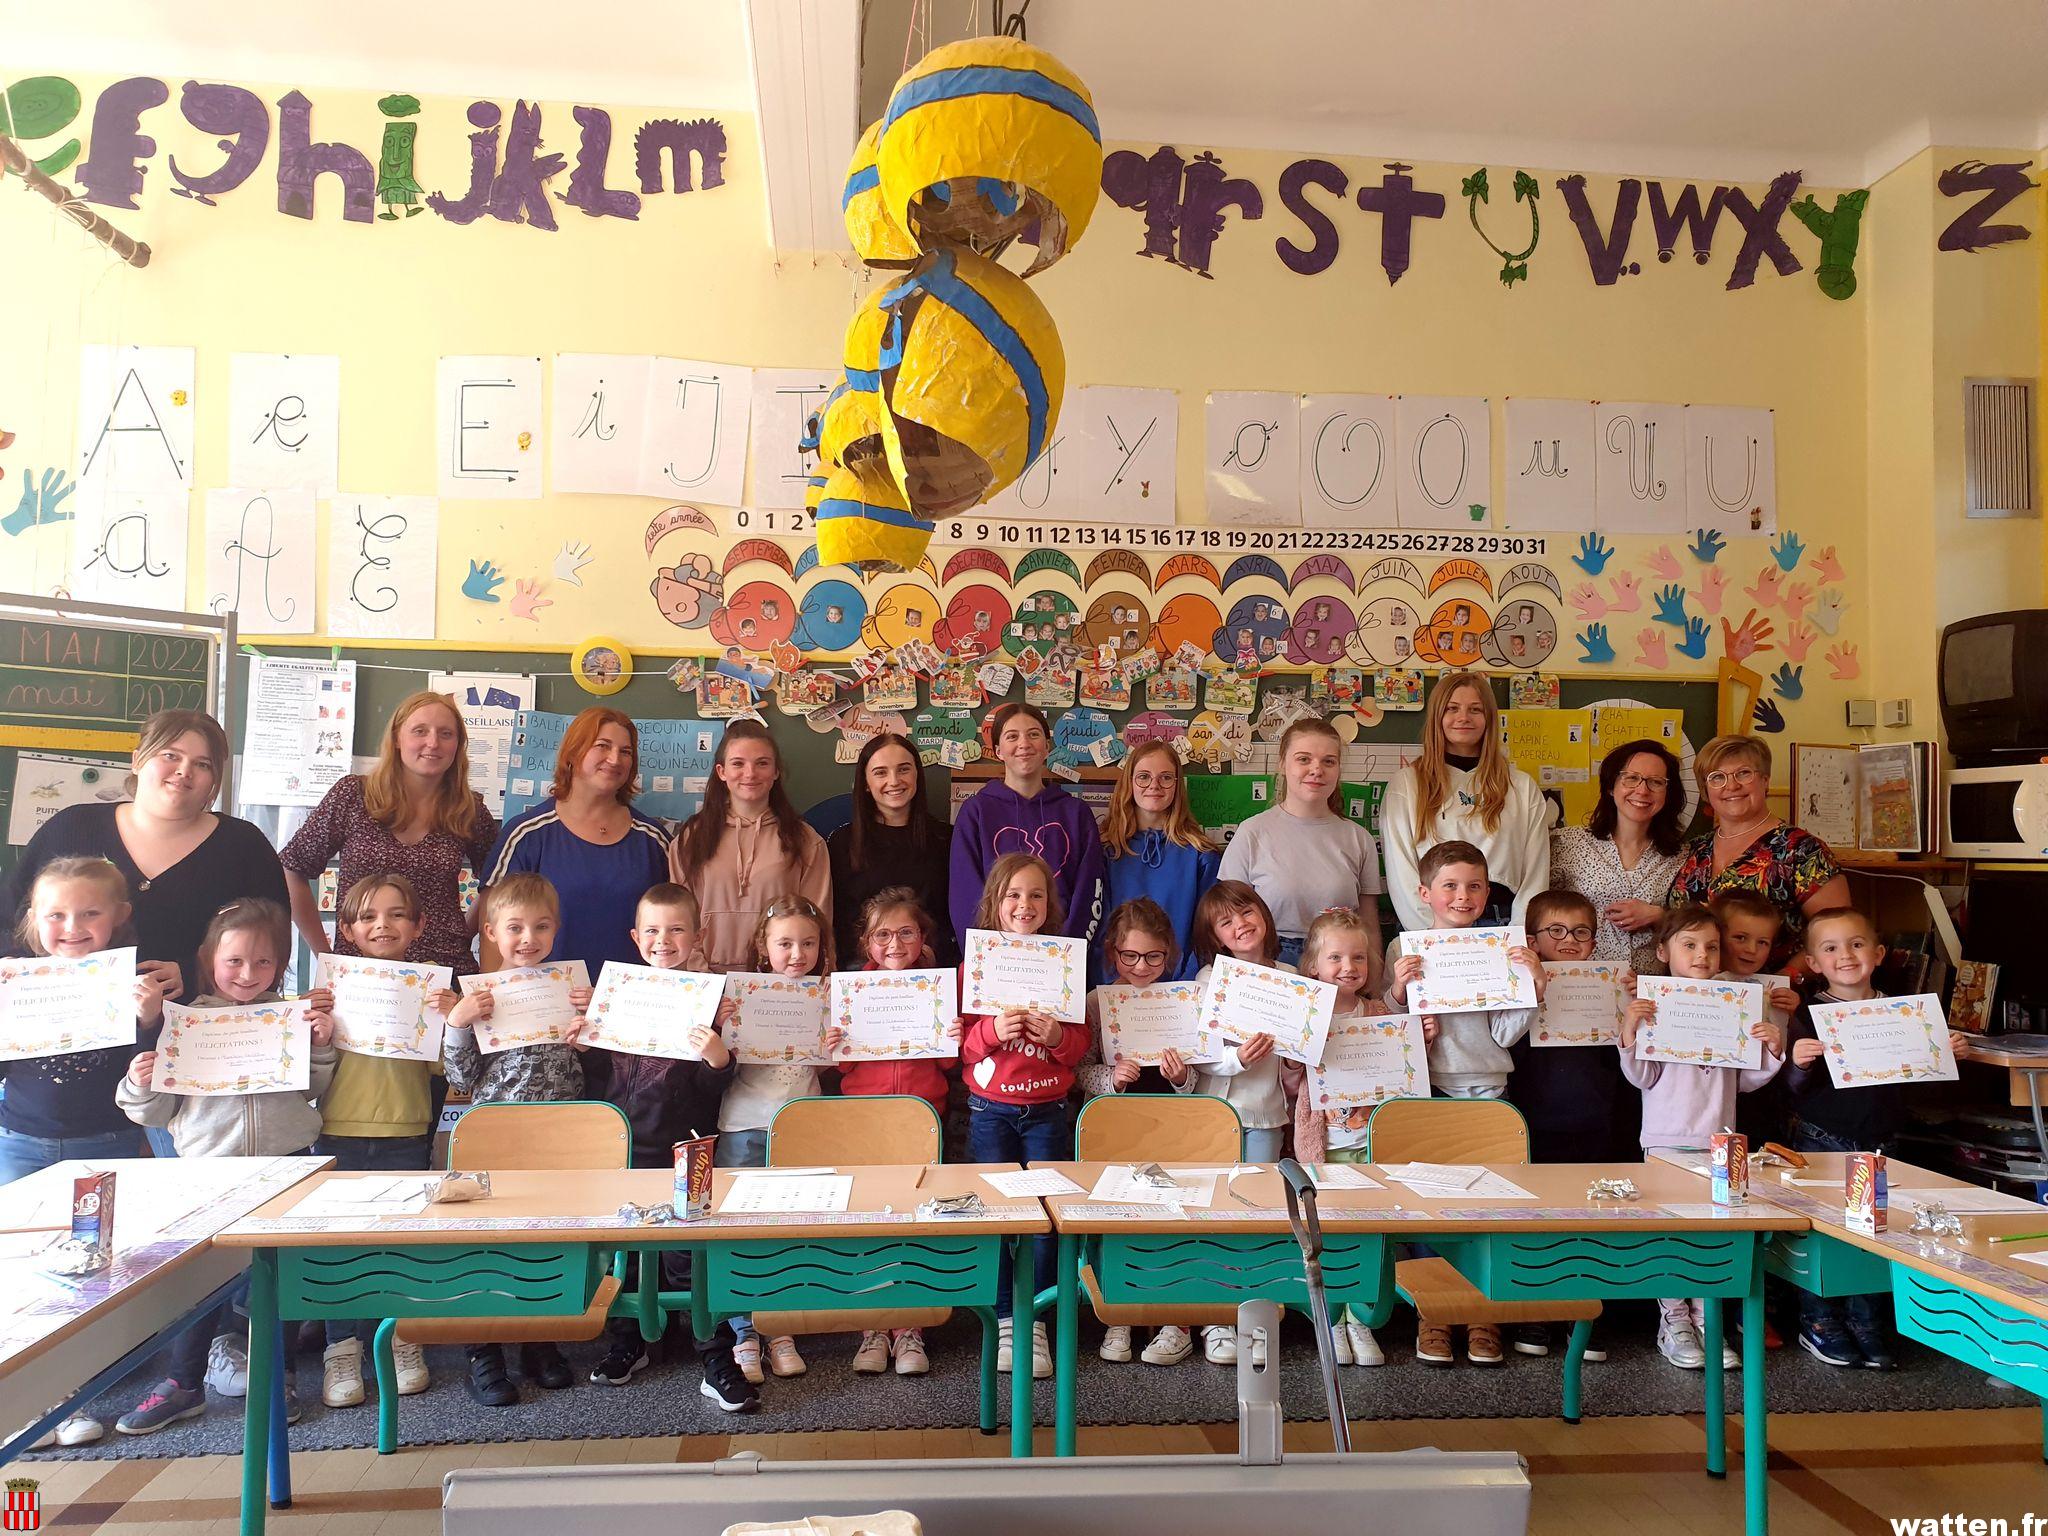 Initiation au braille avec le projet "Mieux connaître pour mieux communiquer" à l'école Brachet